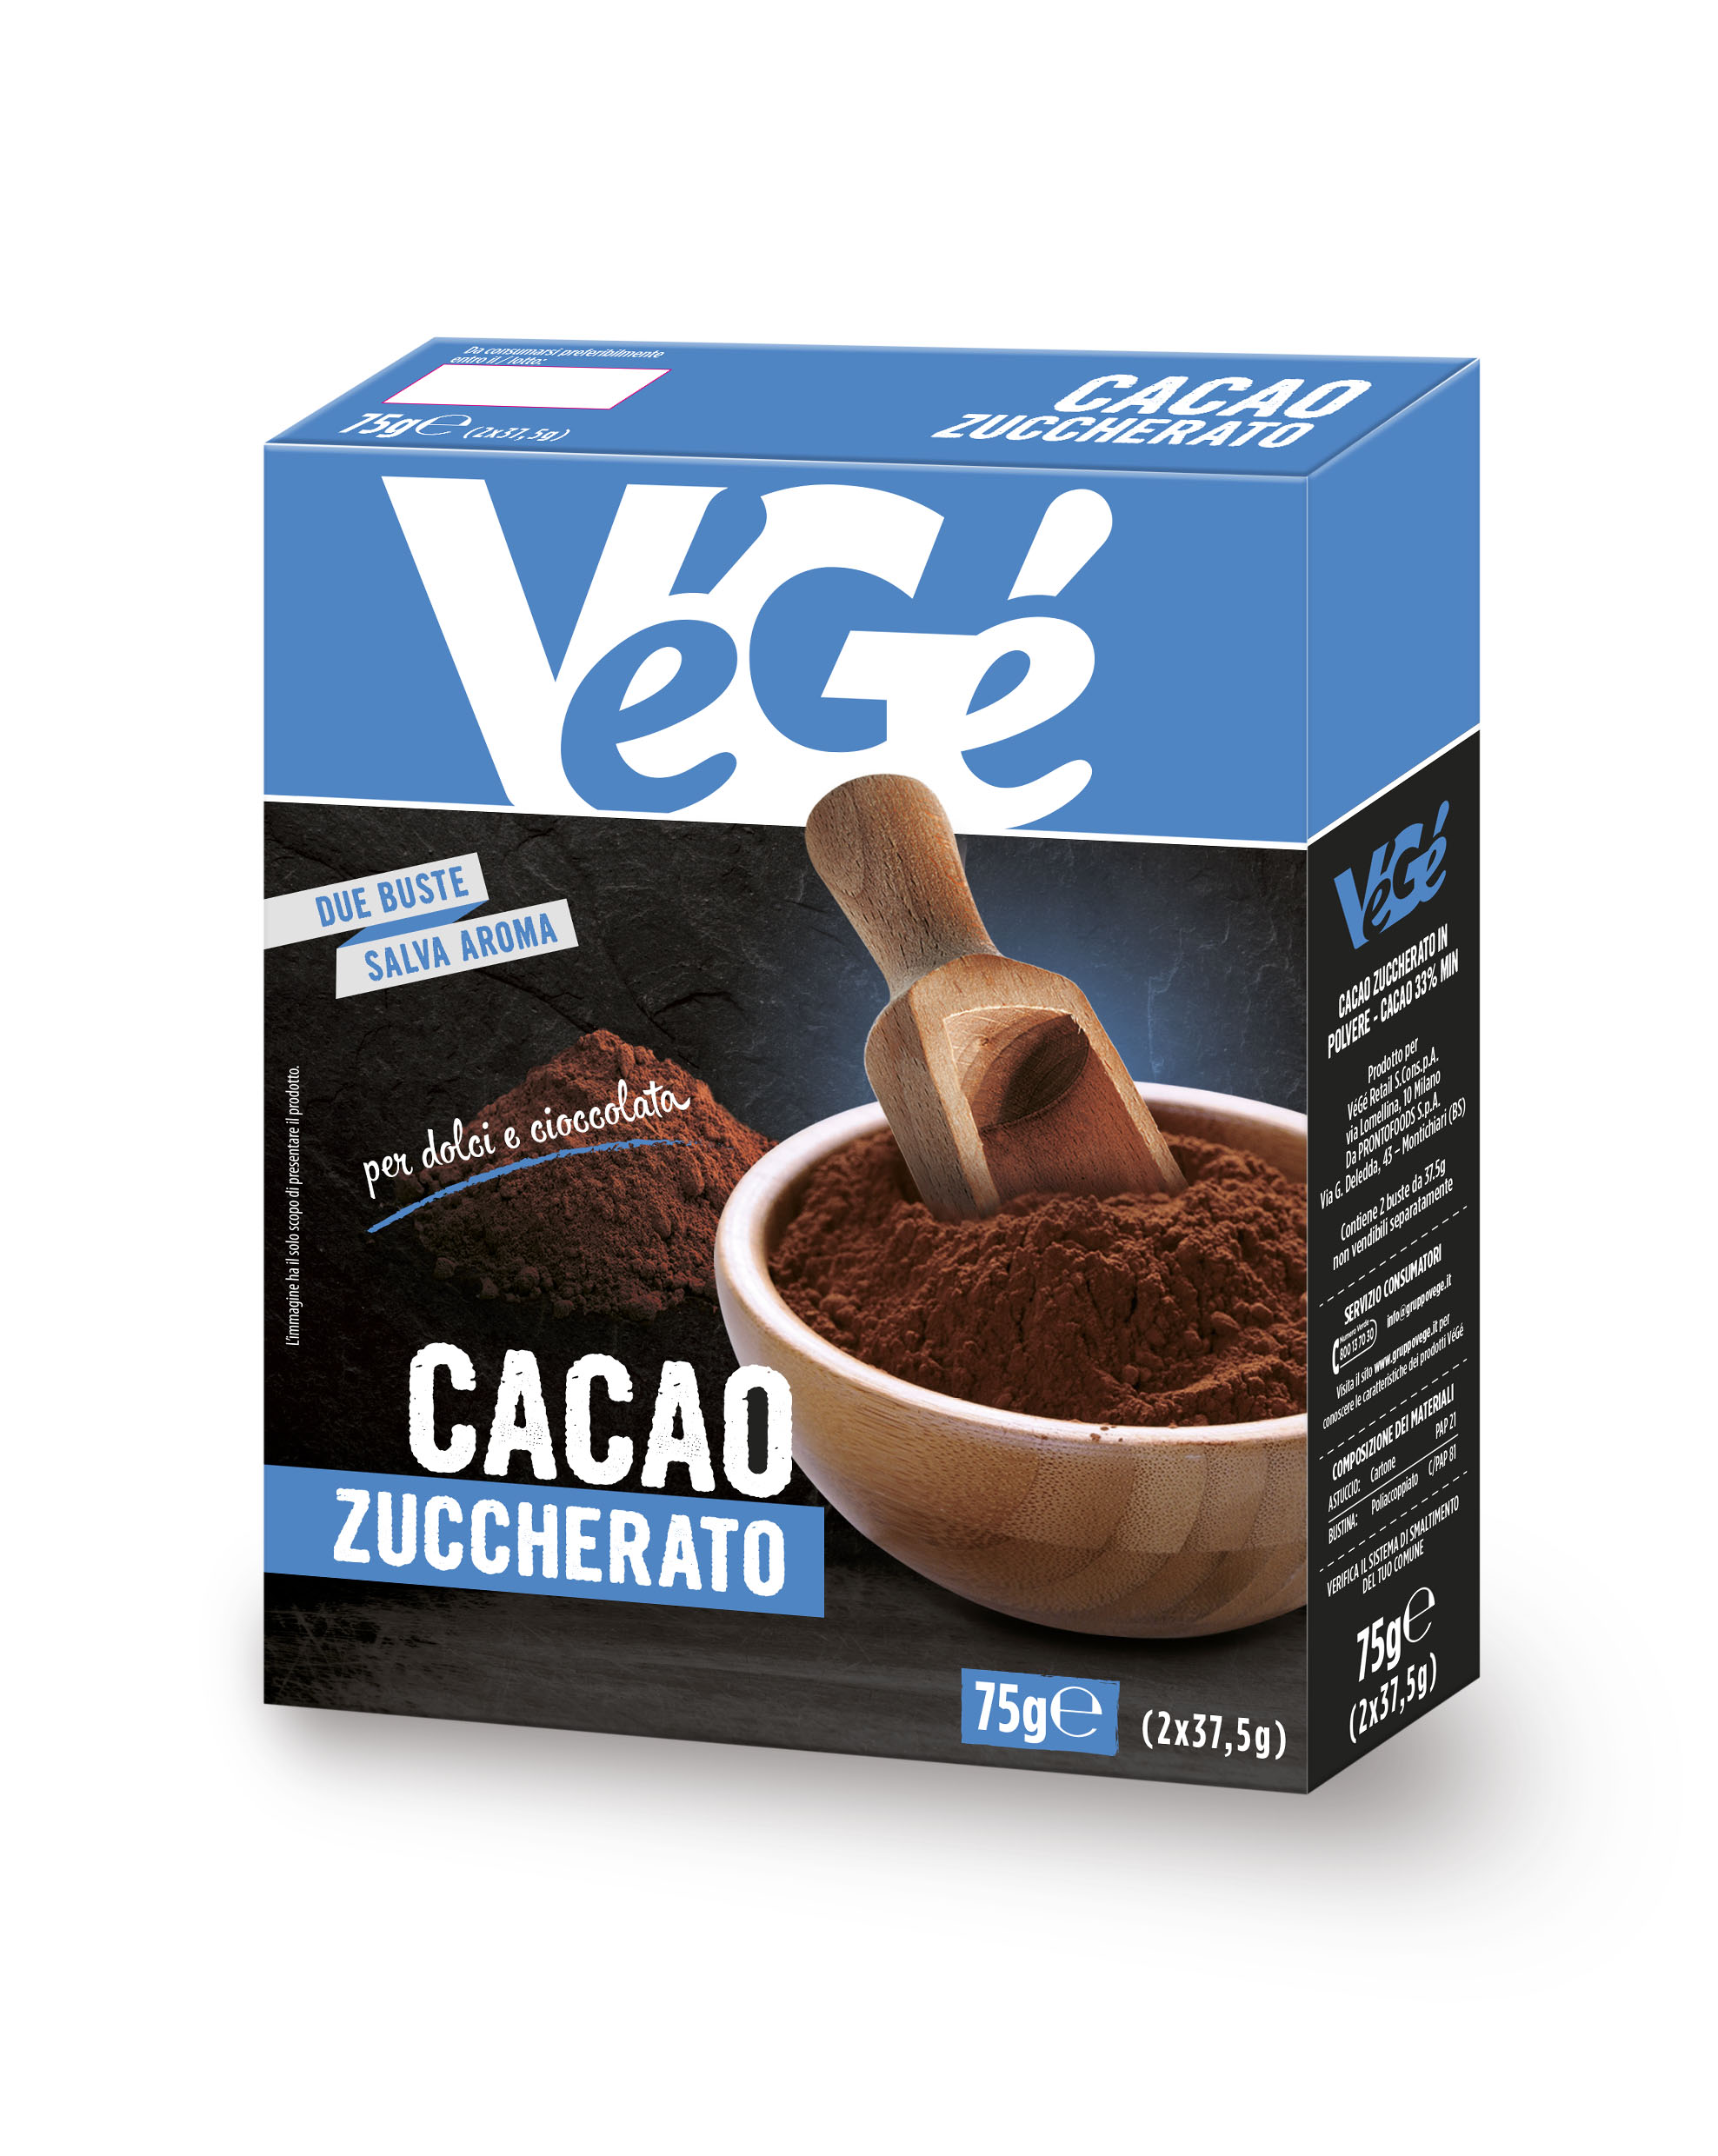 Cacao zuccherato Vegé GDO (Grande Distribuzione Organizzata)